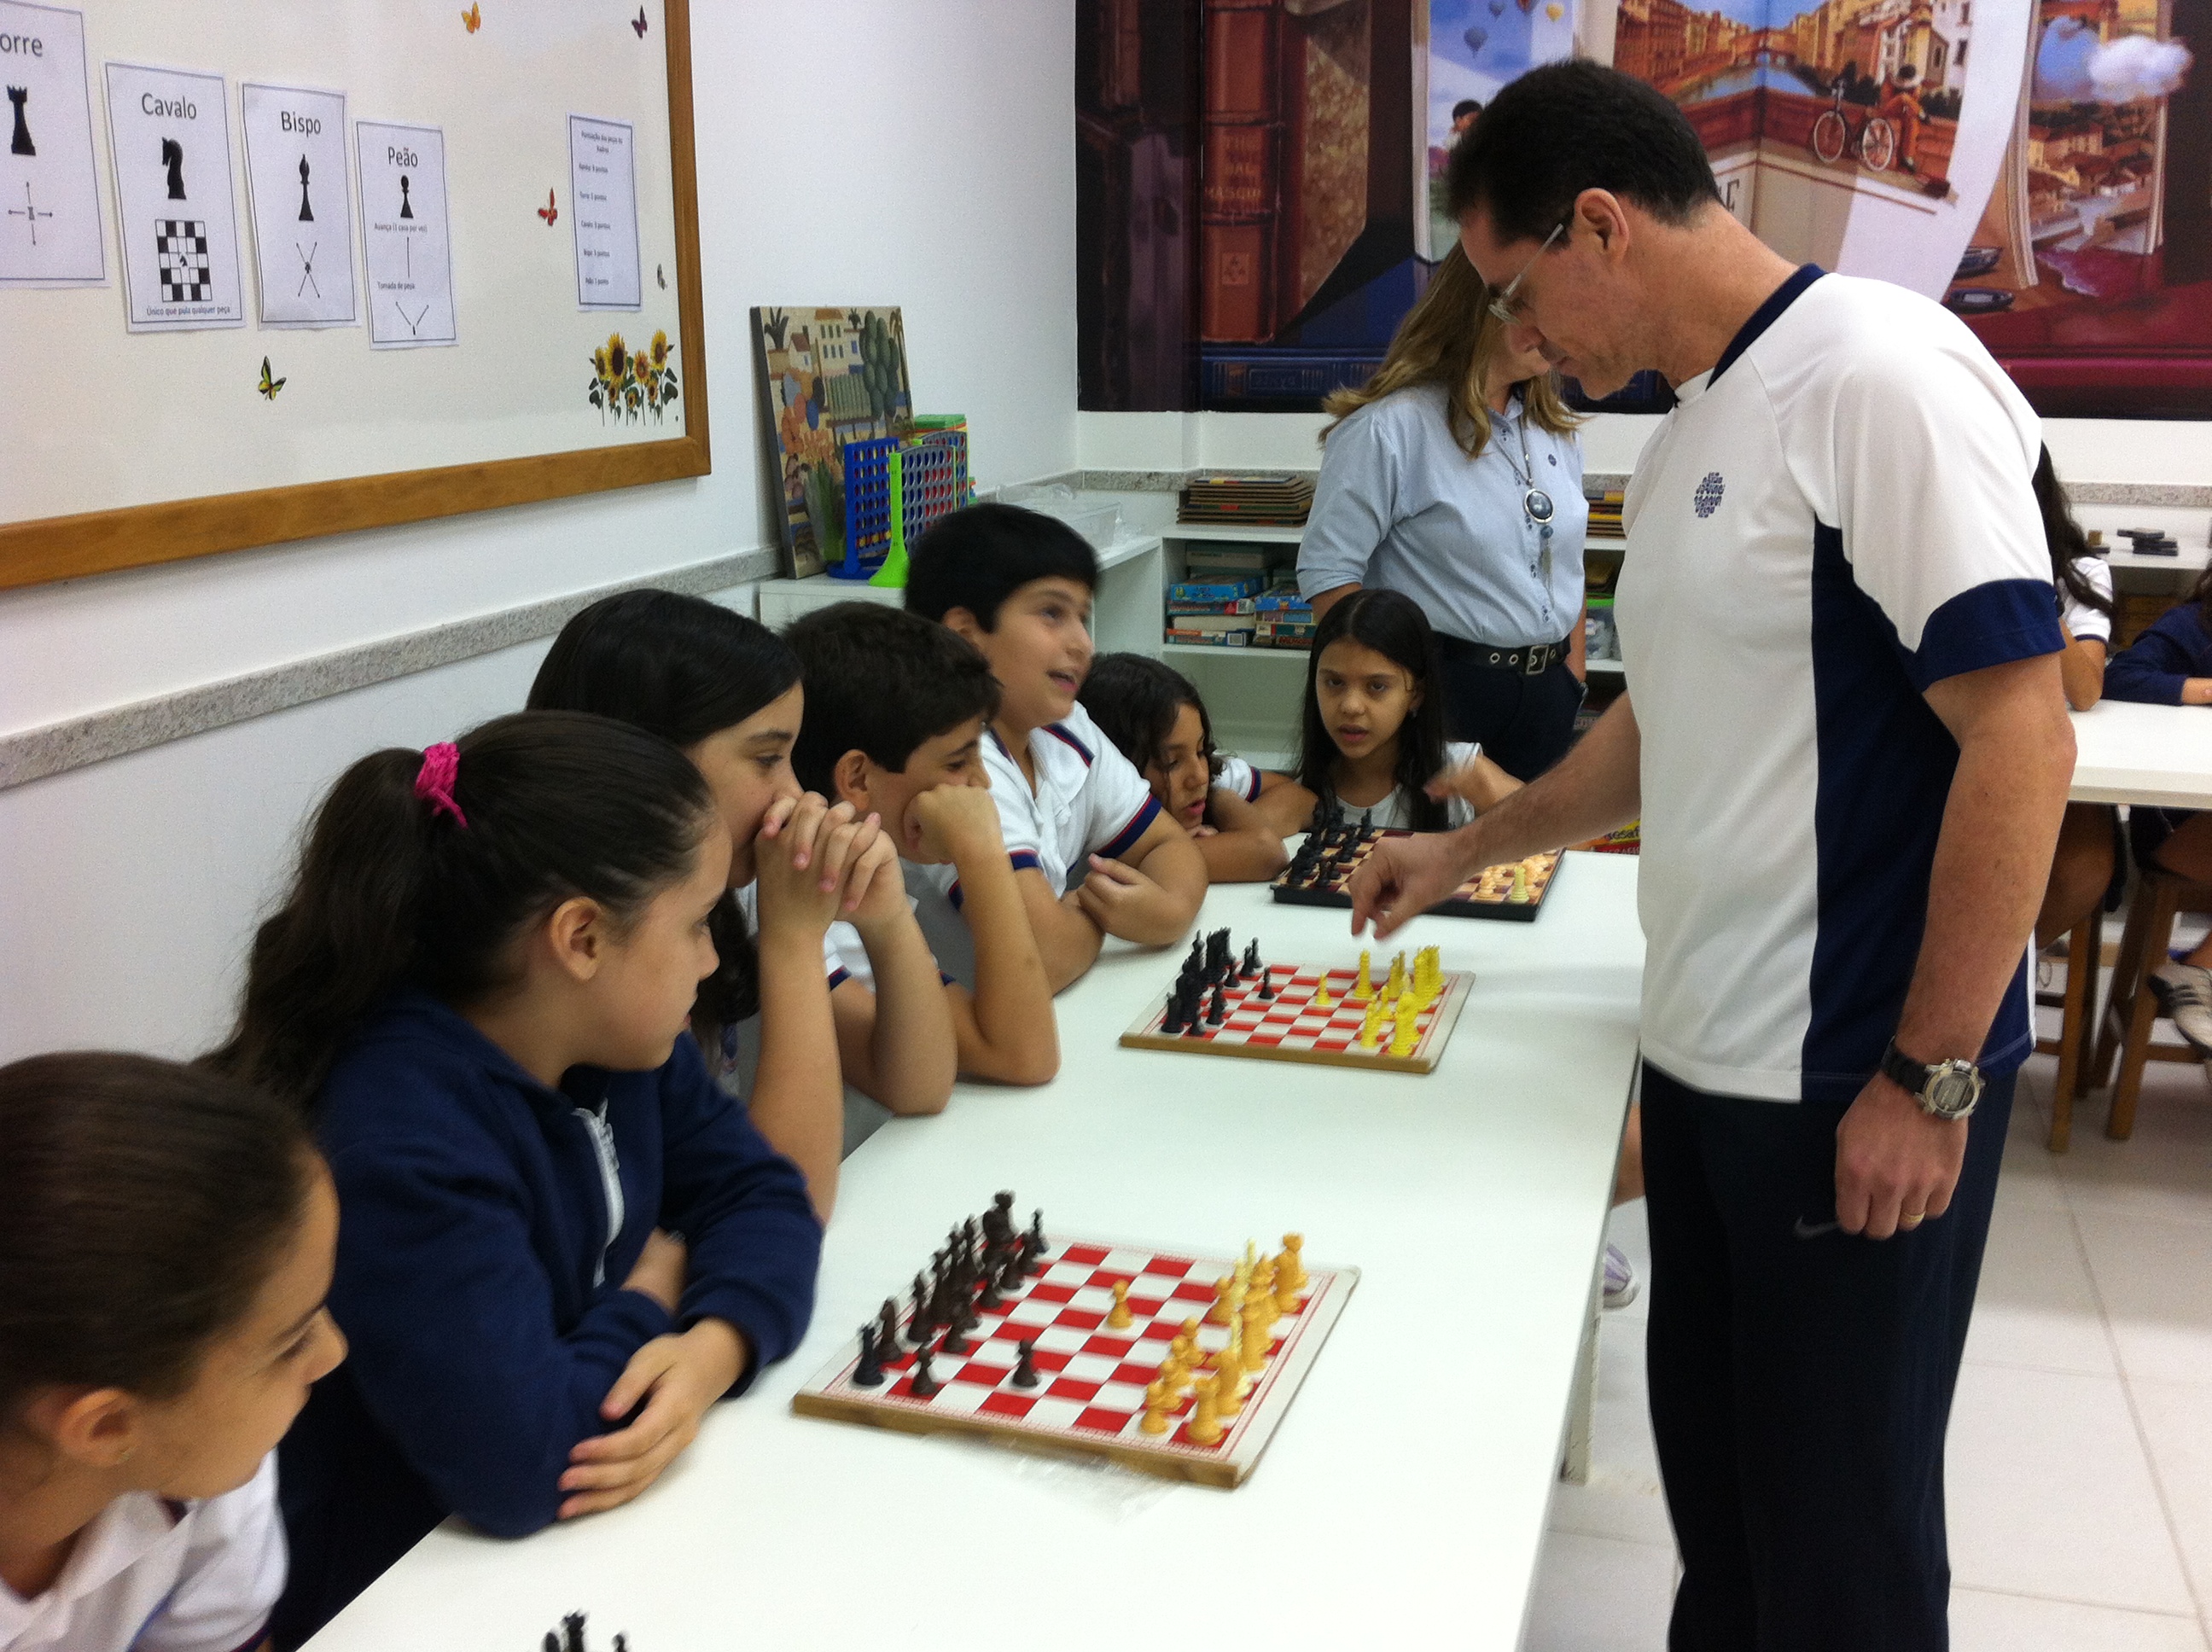 Torneio de Xadrez no Da Vinci - Centro Educacional Leonardo Da